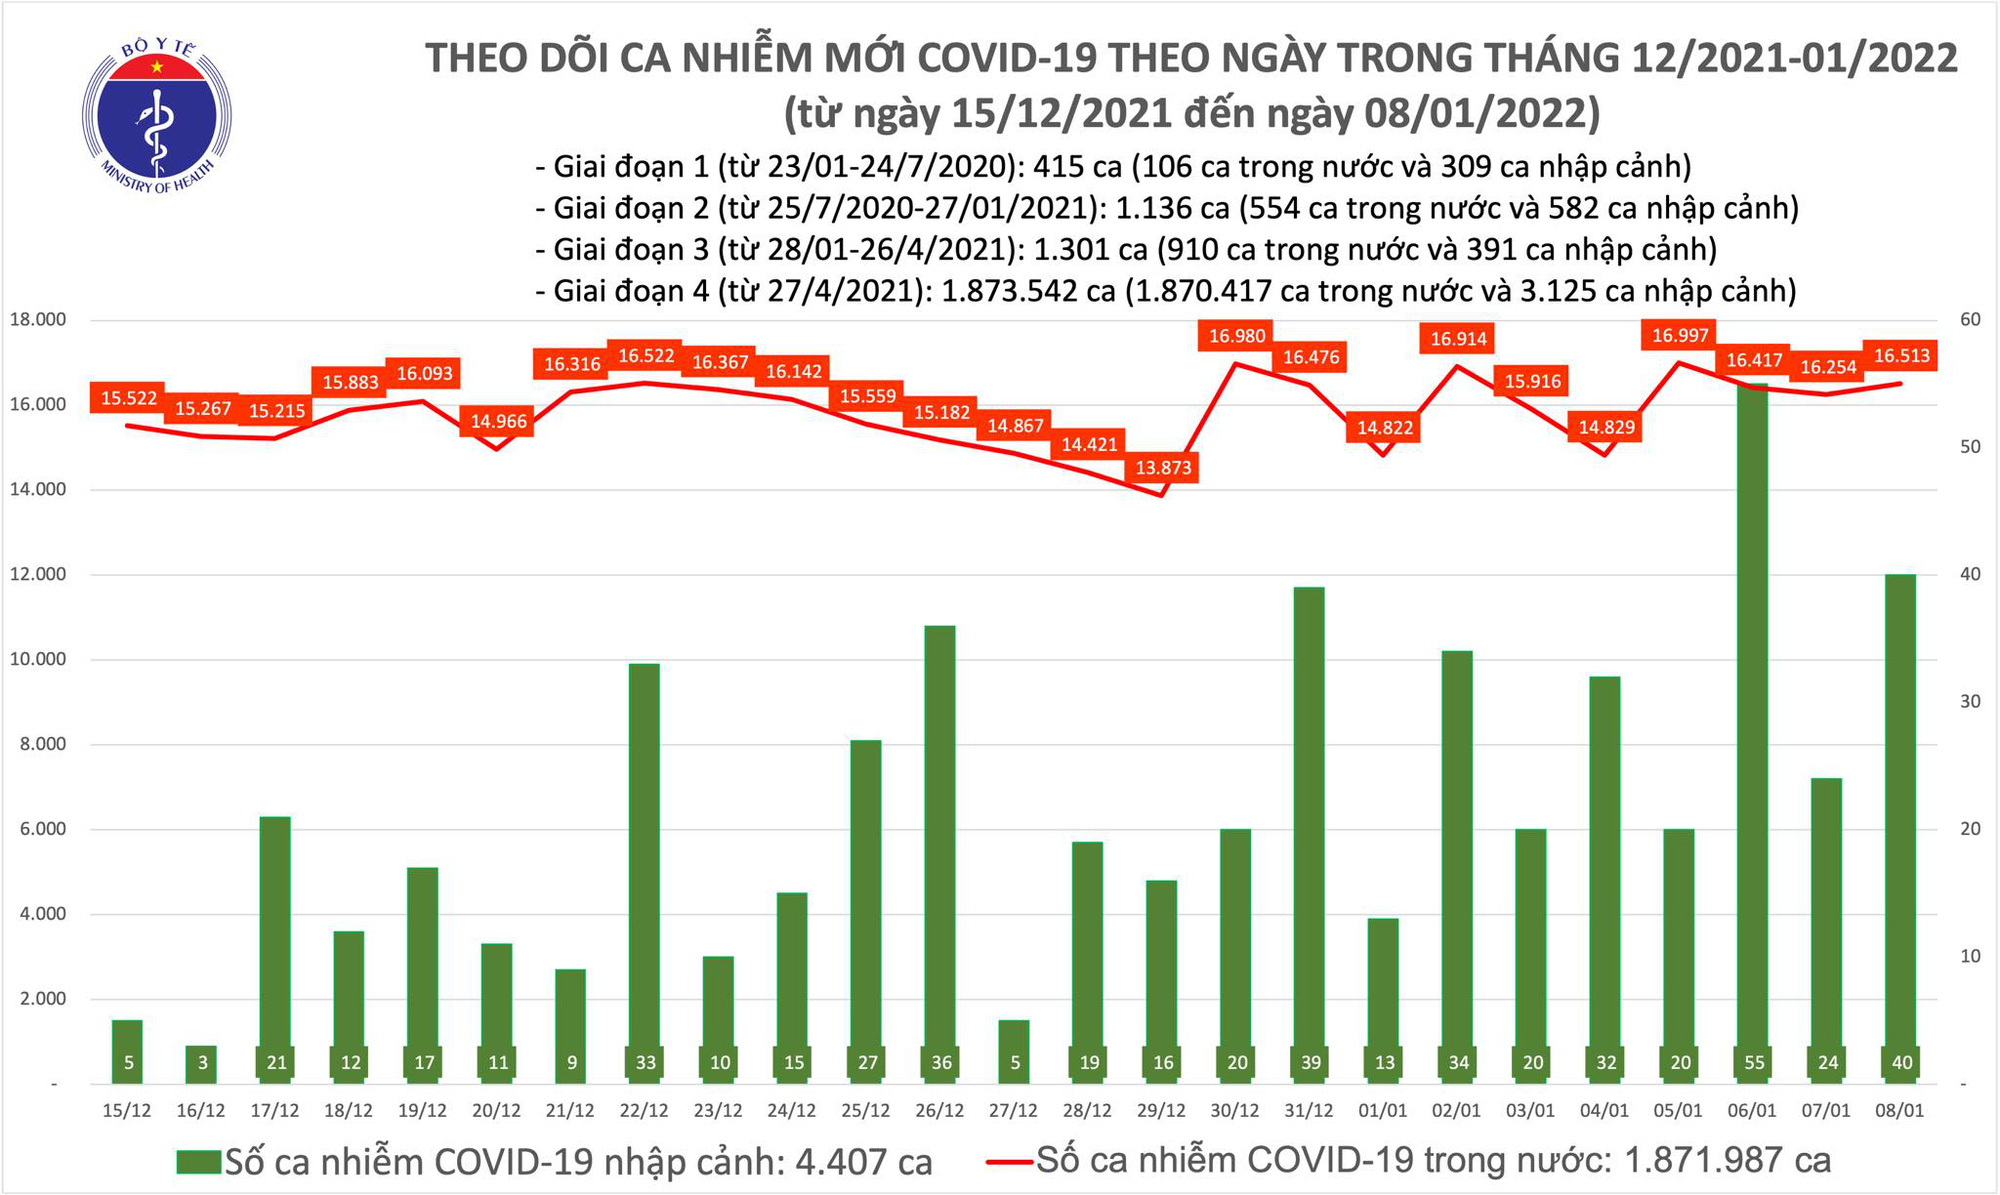 Covid-19 ngày 8/1: Đã có 30 ca mắc biến chủng Omicron, đều là người nhập cảnh - Ảnh 1.